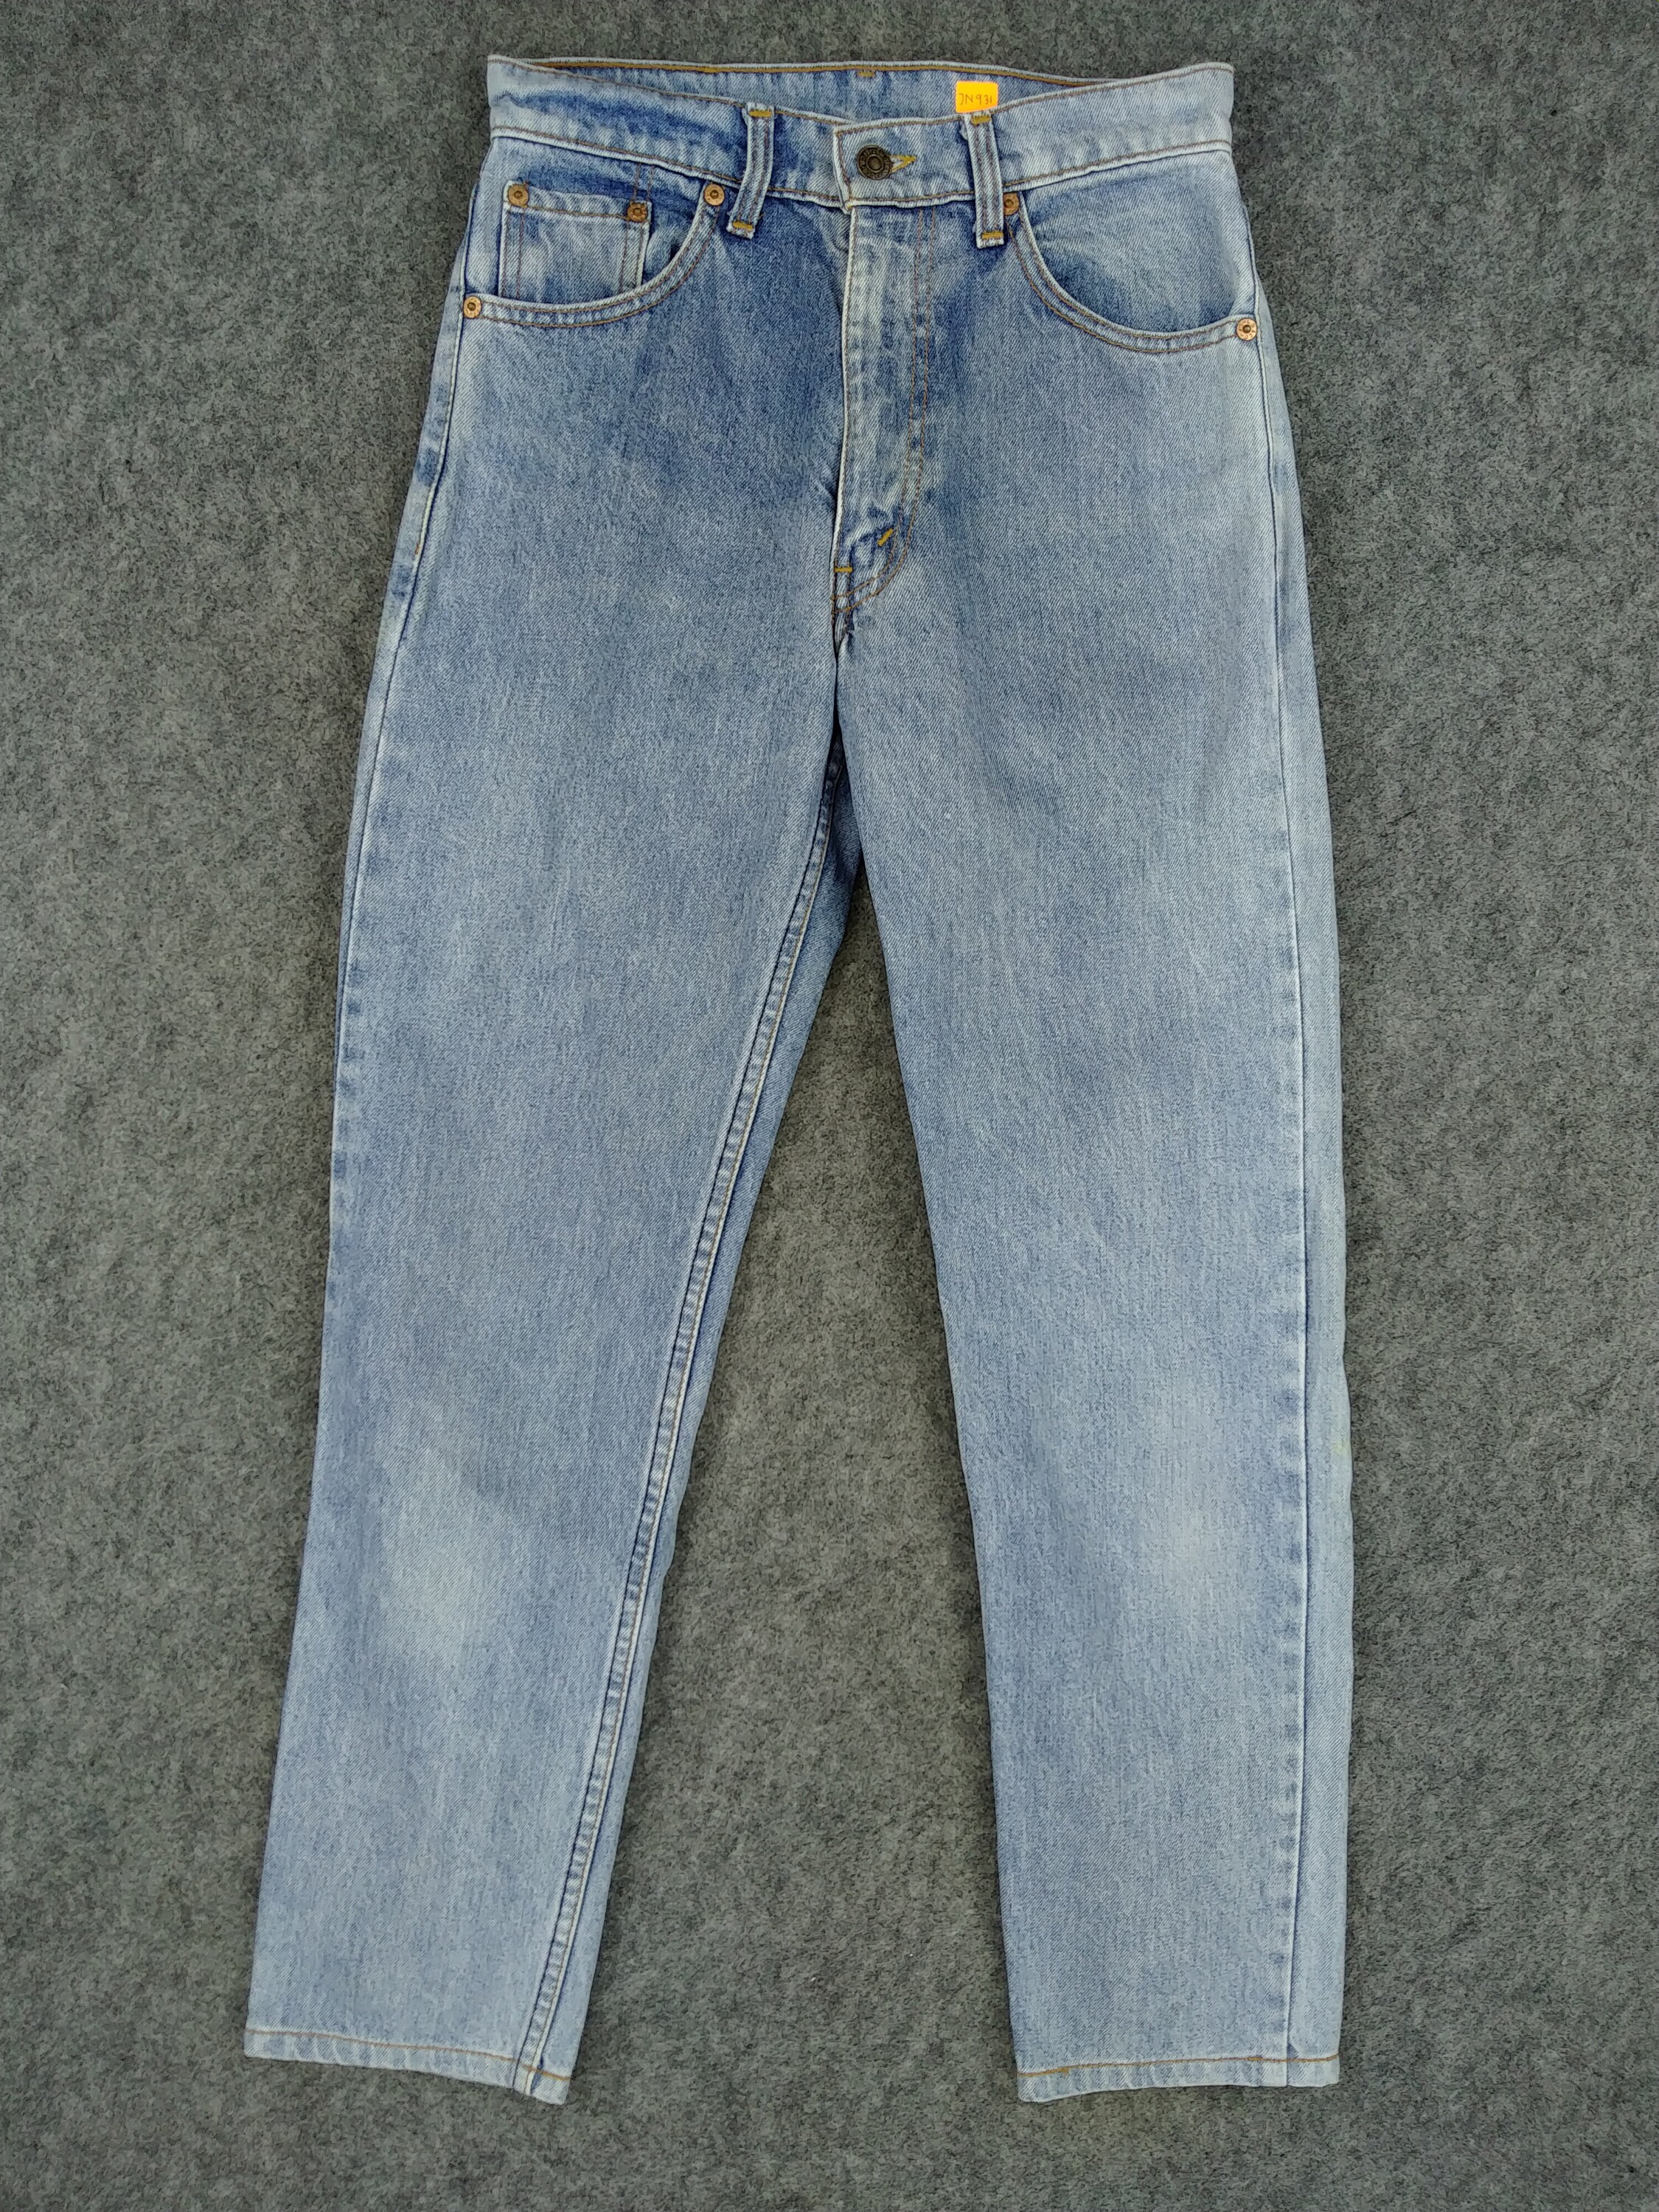 Vintage Levi's 626 Jeans 27x27.5 Light Blue Wash Denim Red | Etsy